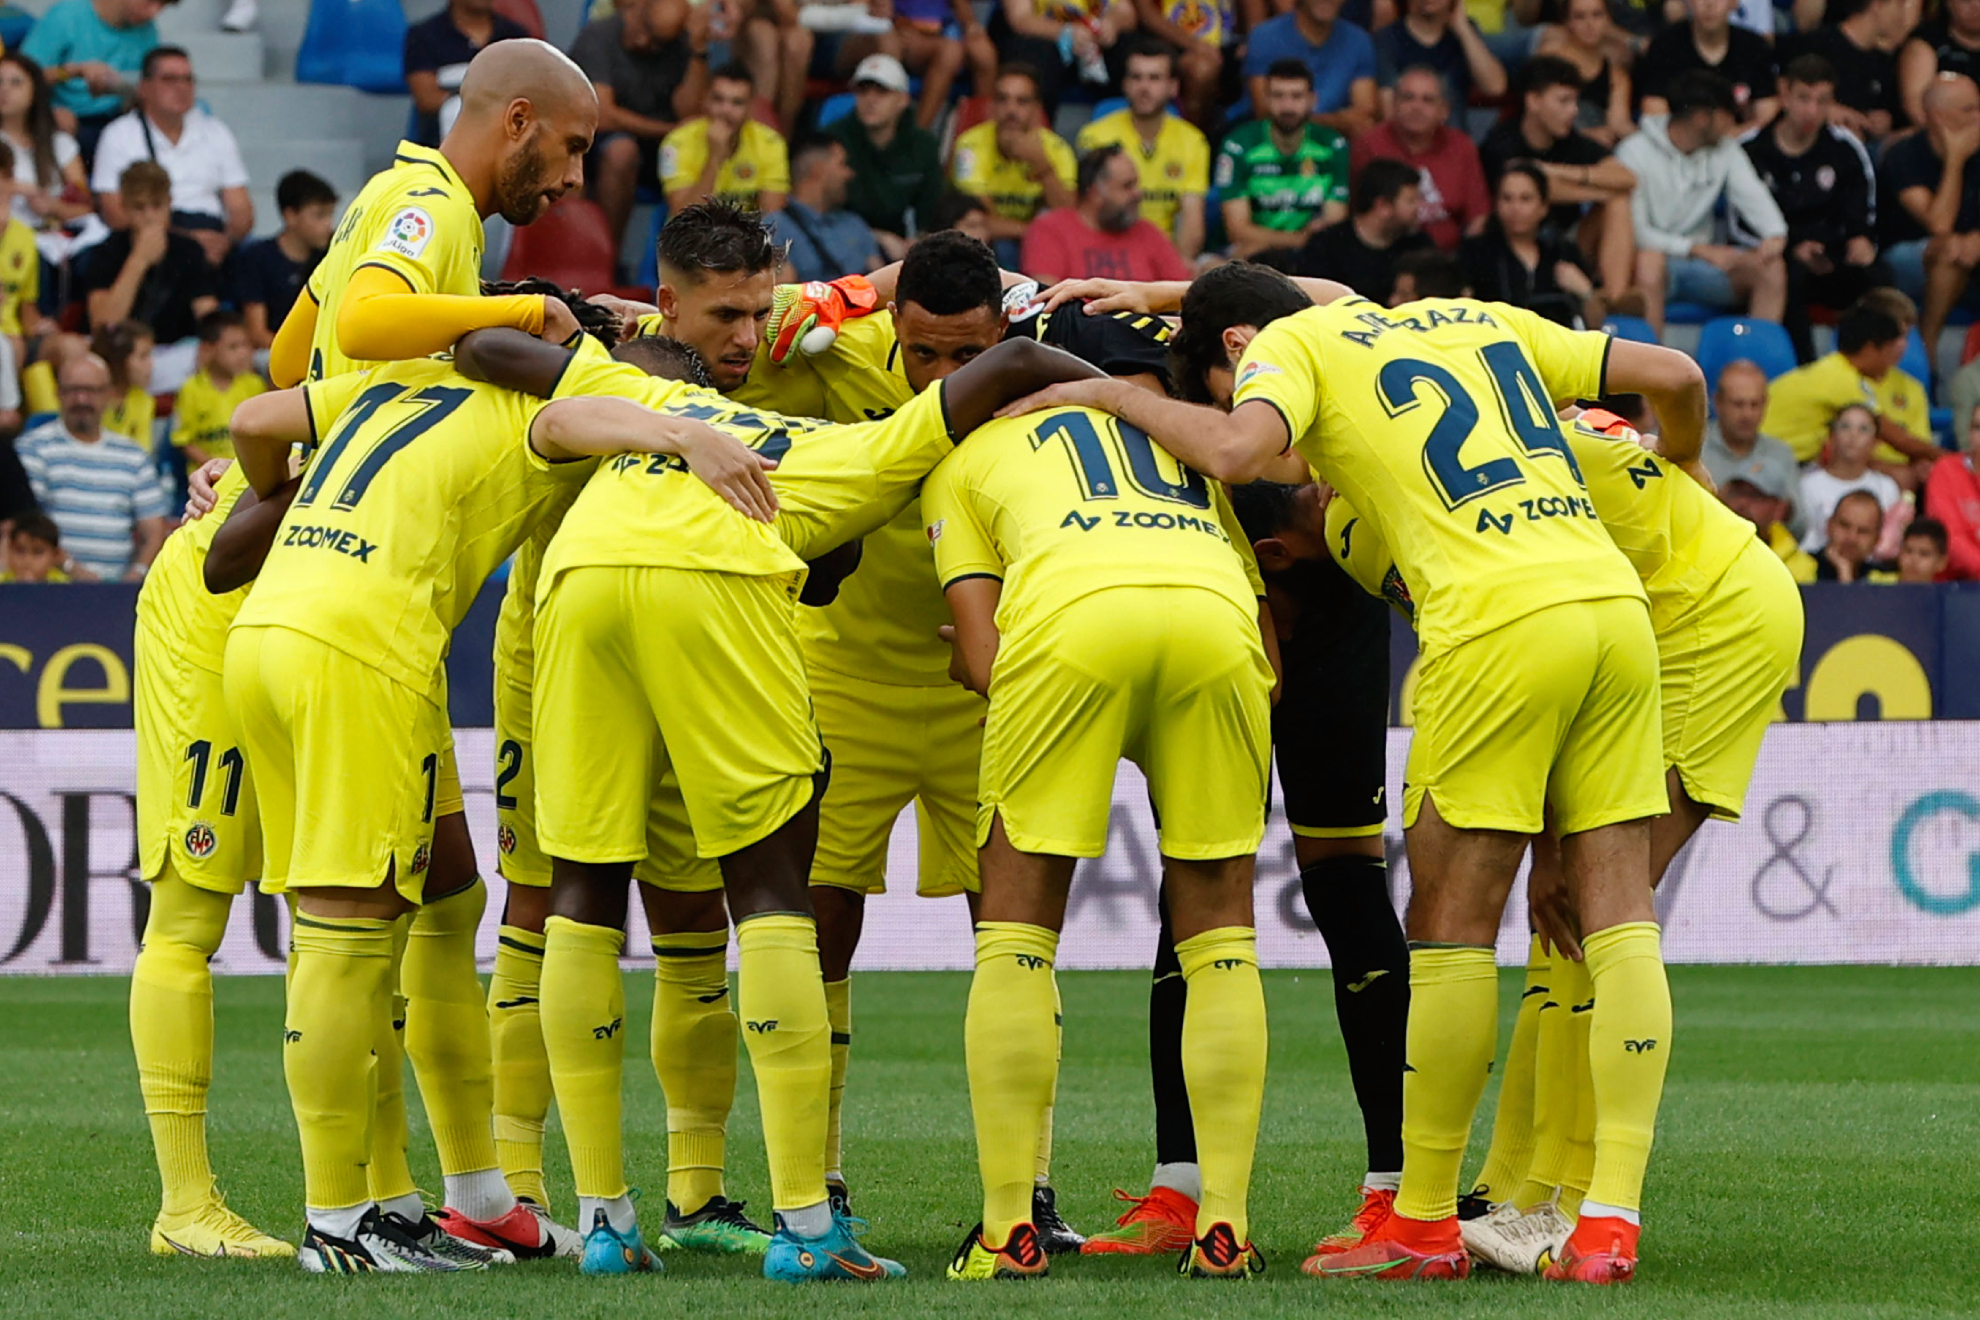 Abrazo de los jugadores del Villarreal antes del inicio de partido/ Carme Ripolles